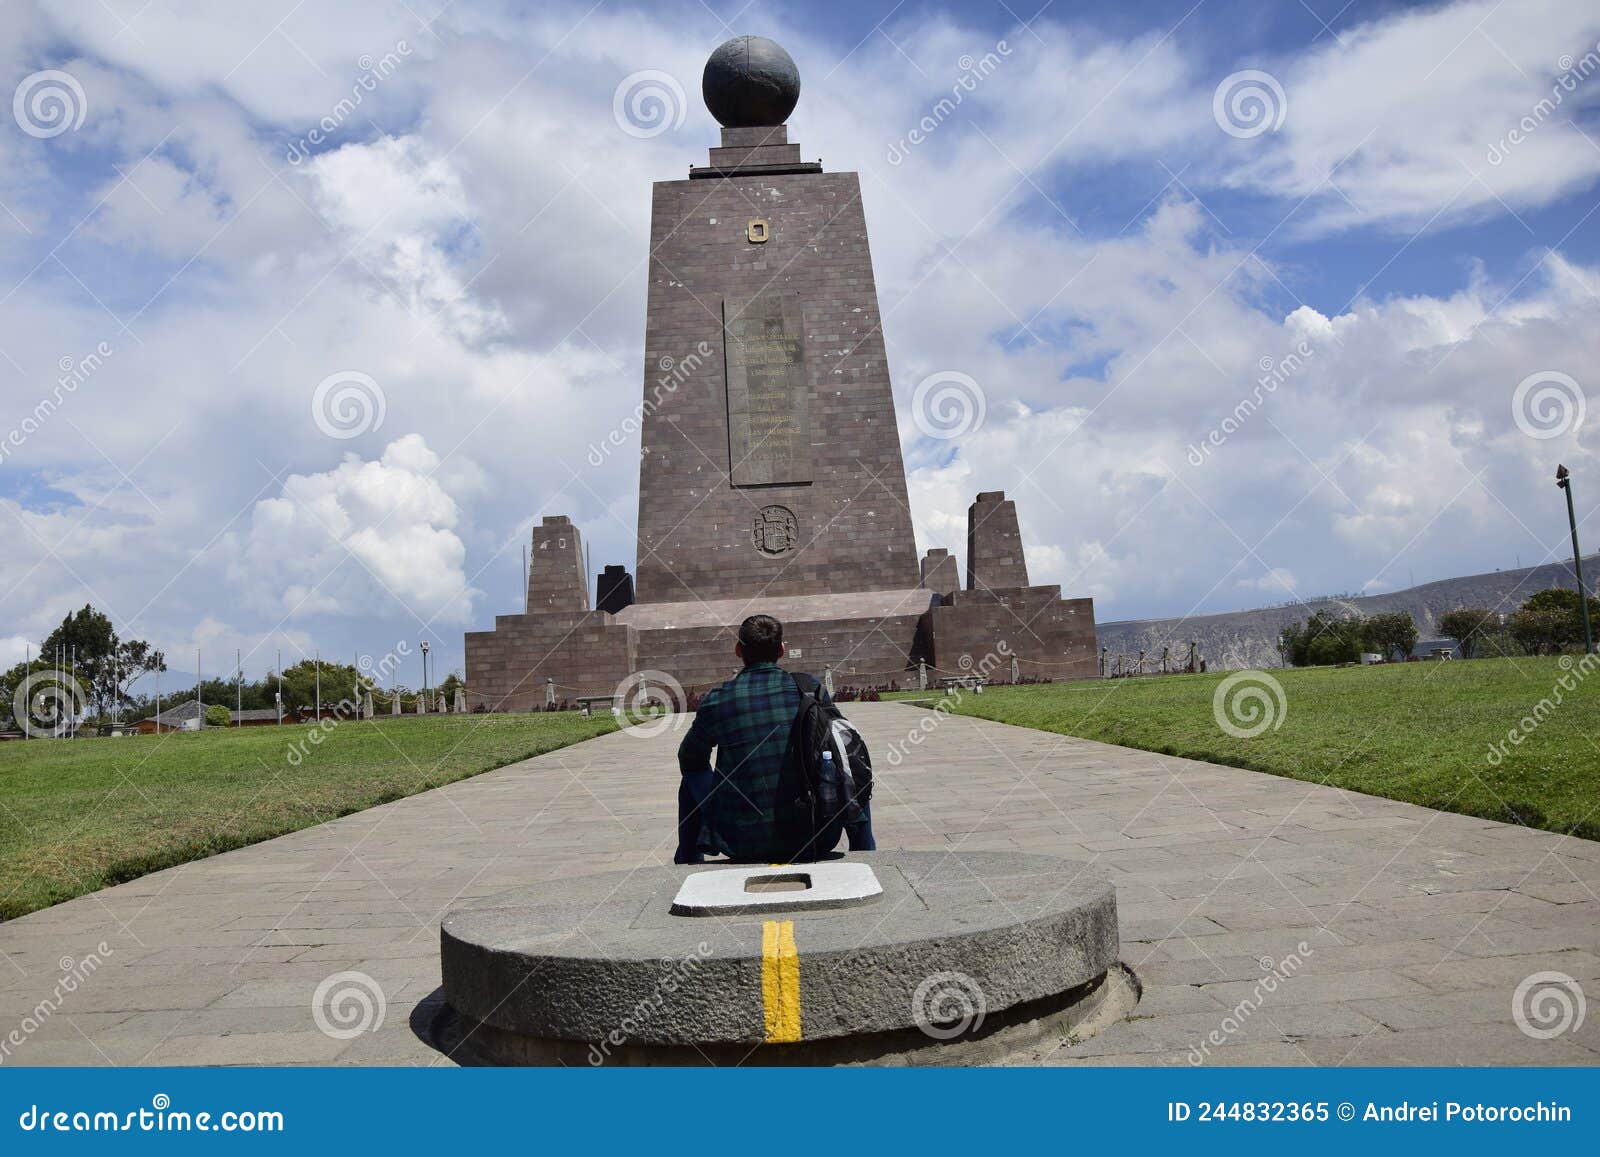 equator line in mitad del mundo (middle of the world) monument near quito